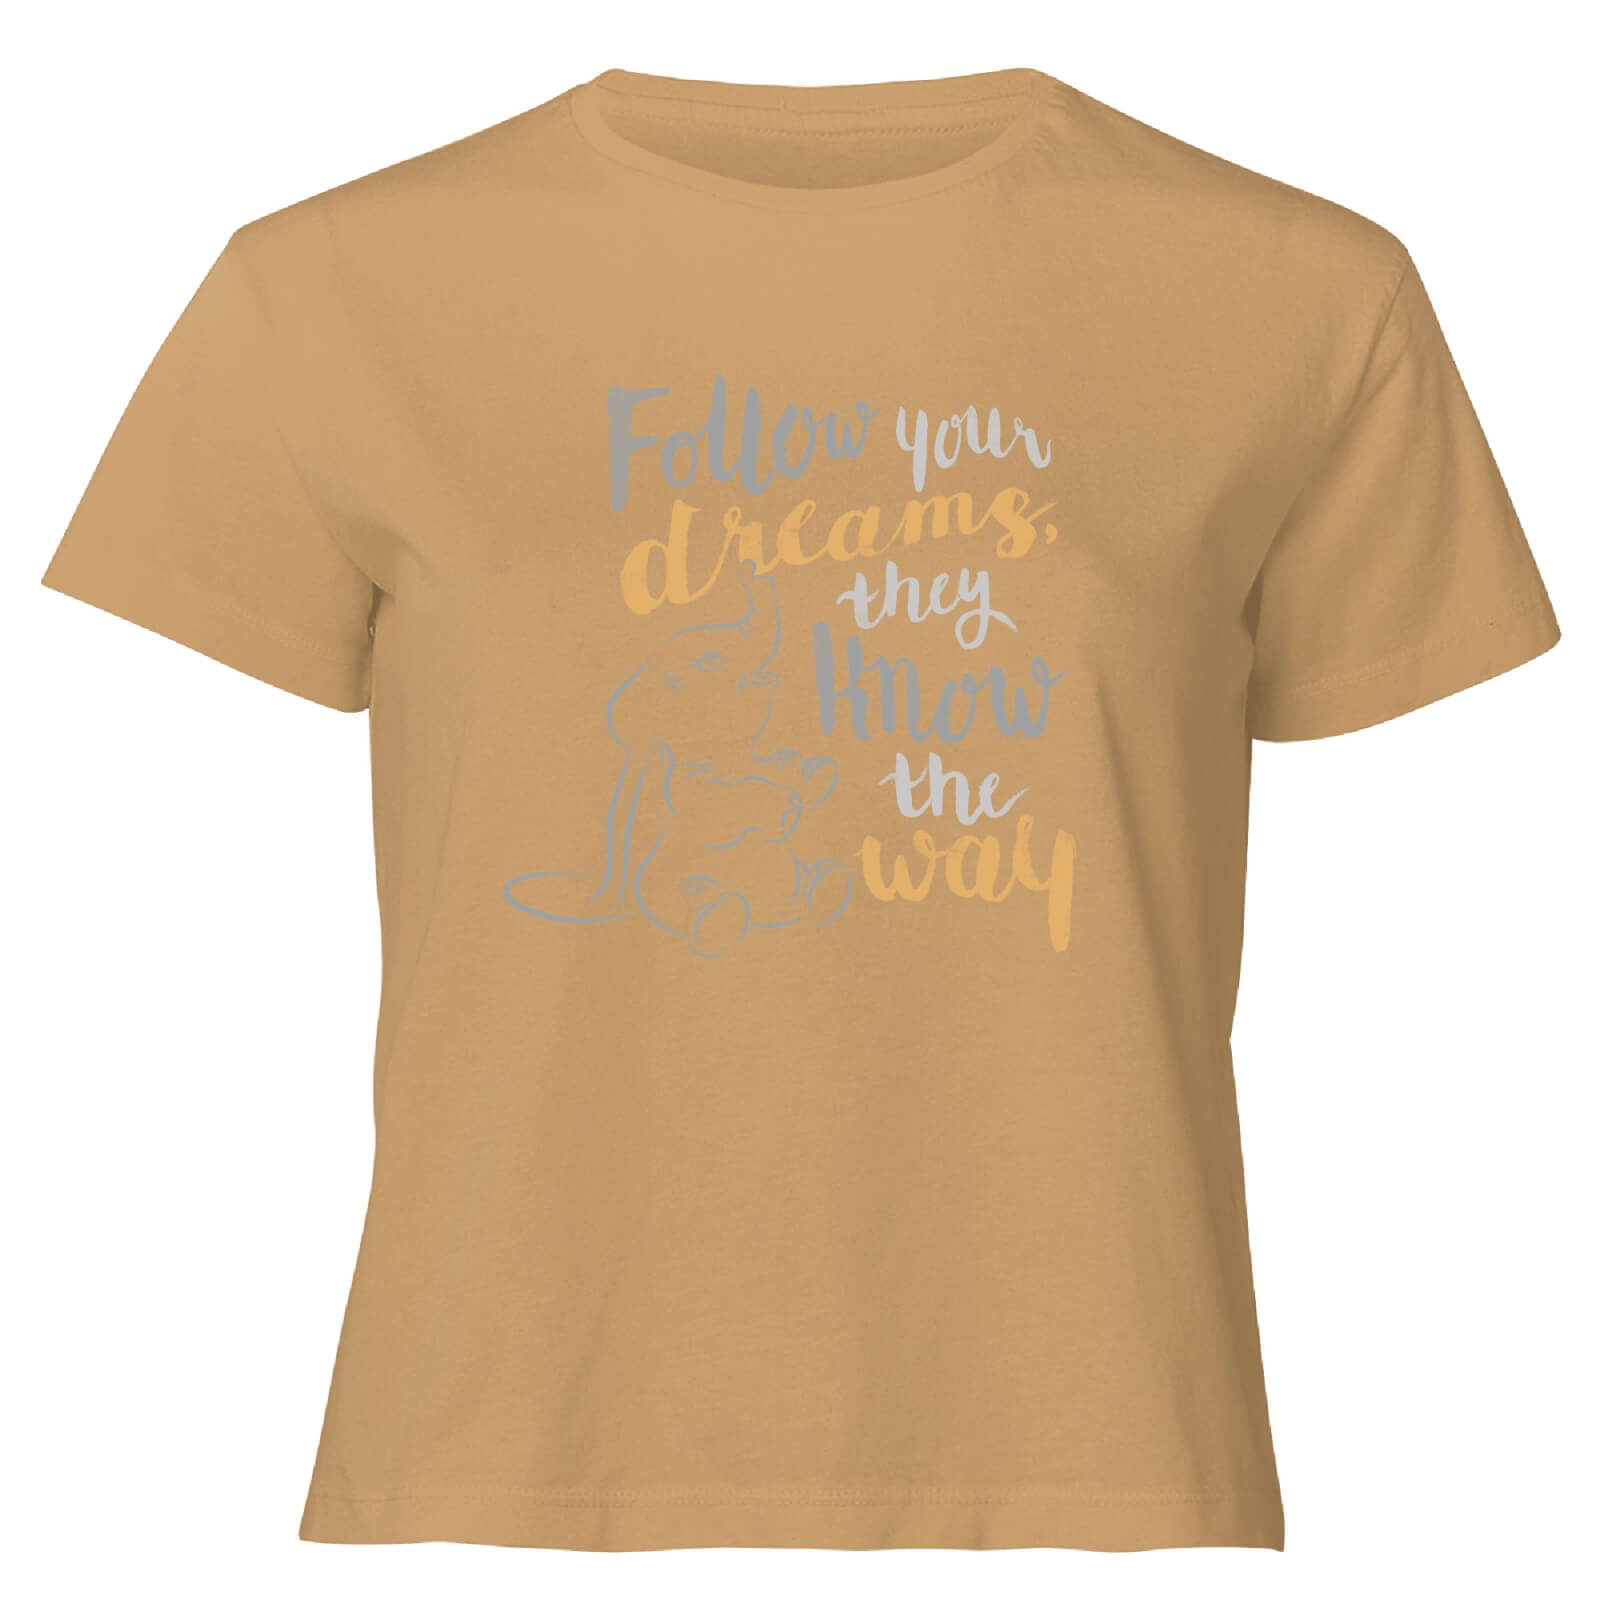 Dumbo Follow Your Dreams Women's Cropped T-Shirt - Tan - XS - Tan